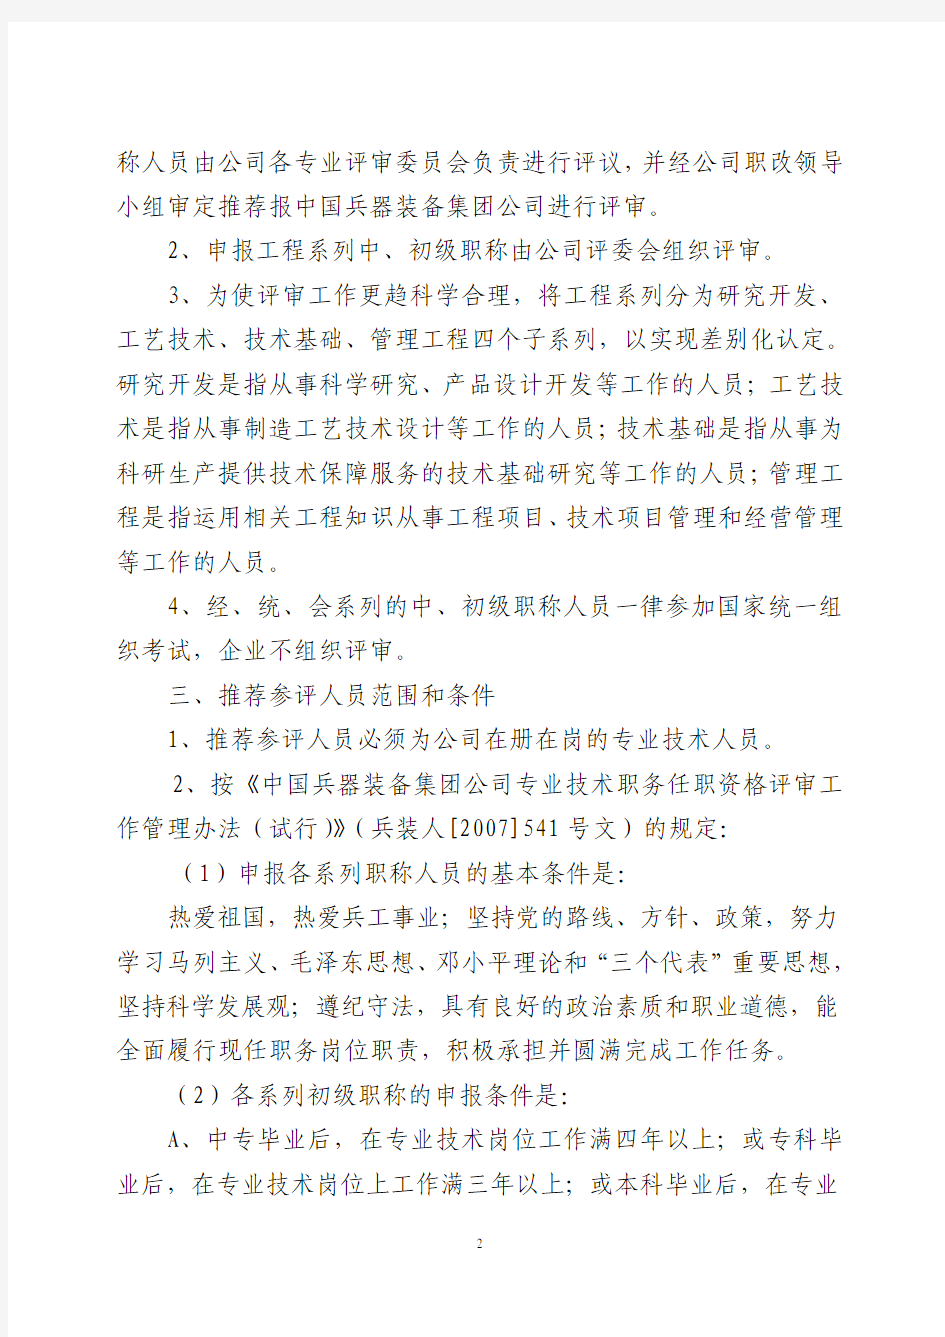 大江人(2012)192号  关于开展二O一二年度专业技术职务任职资格评审工作的通知